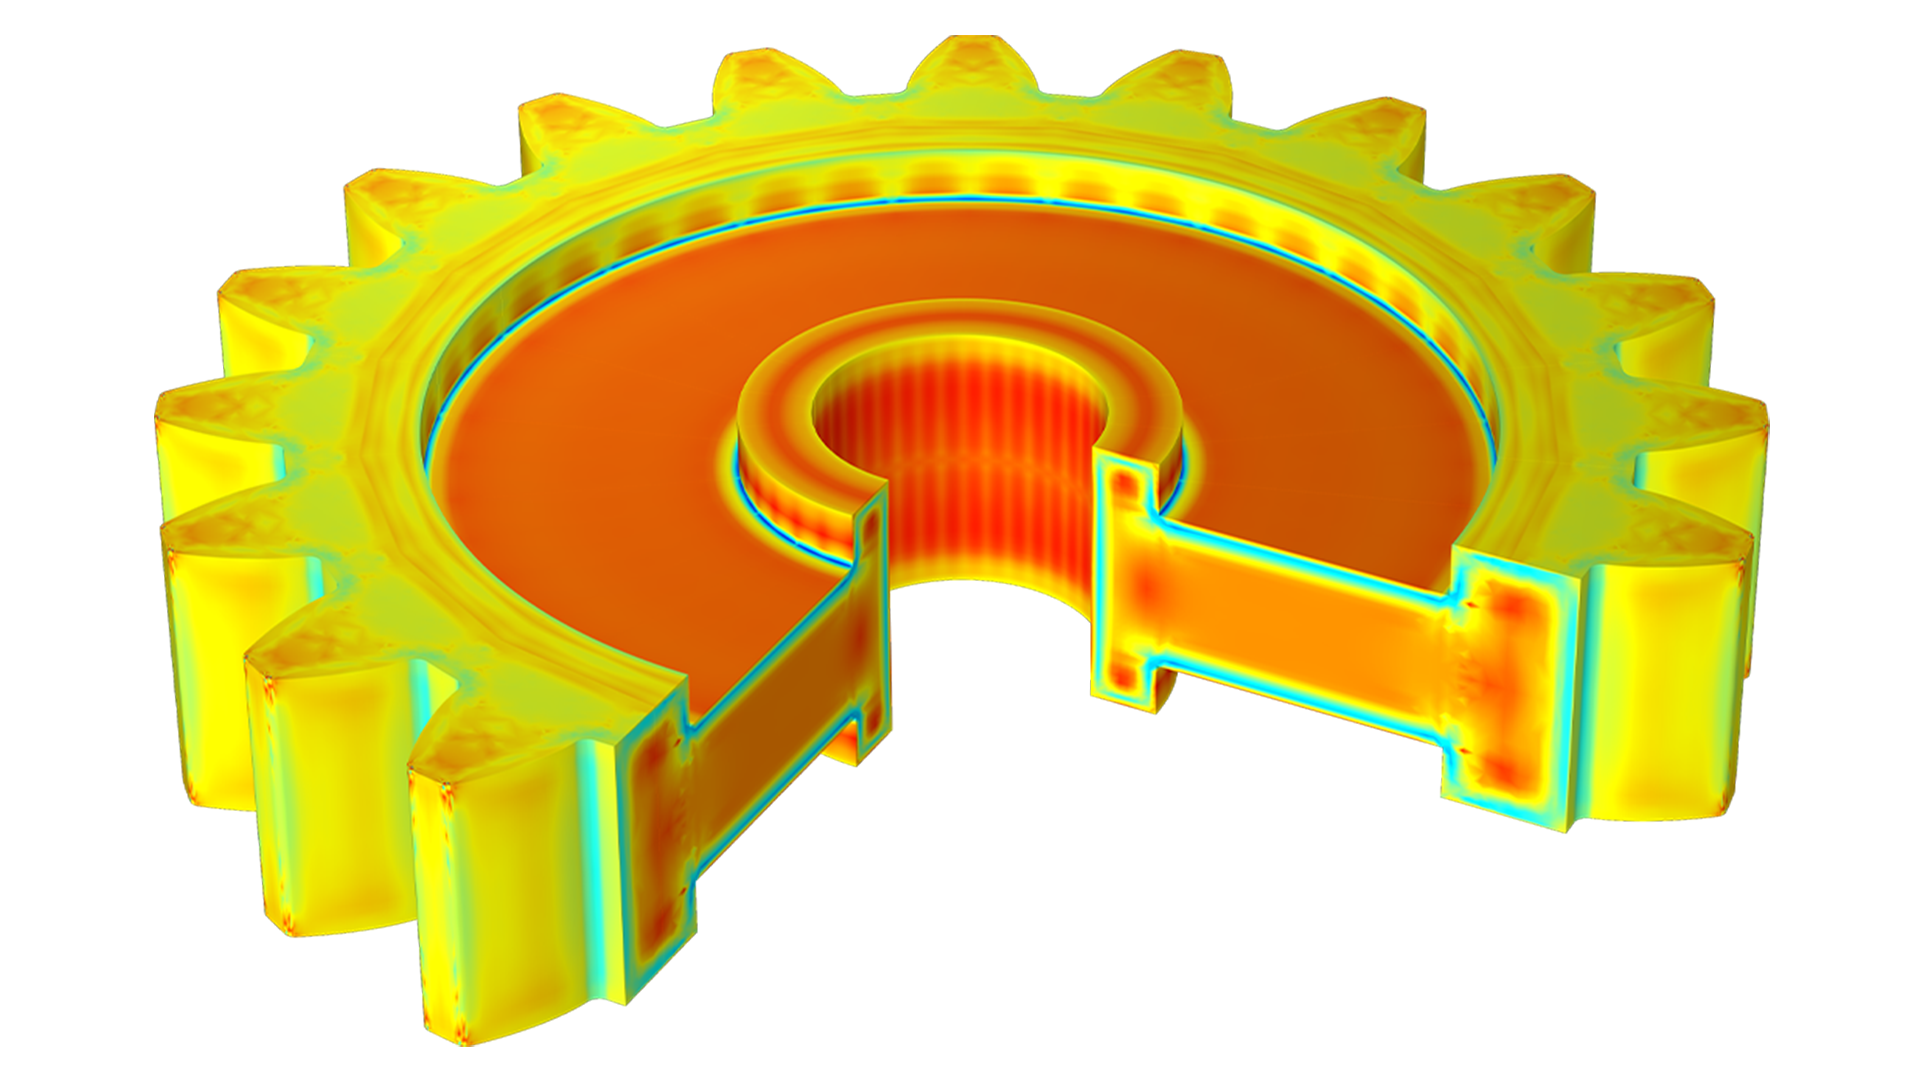 Modèle d'un engrenage droit visualisé en orange, jaune et vert, où une tranche est manquante, révélant l'intérieur de l'engrenage.